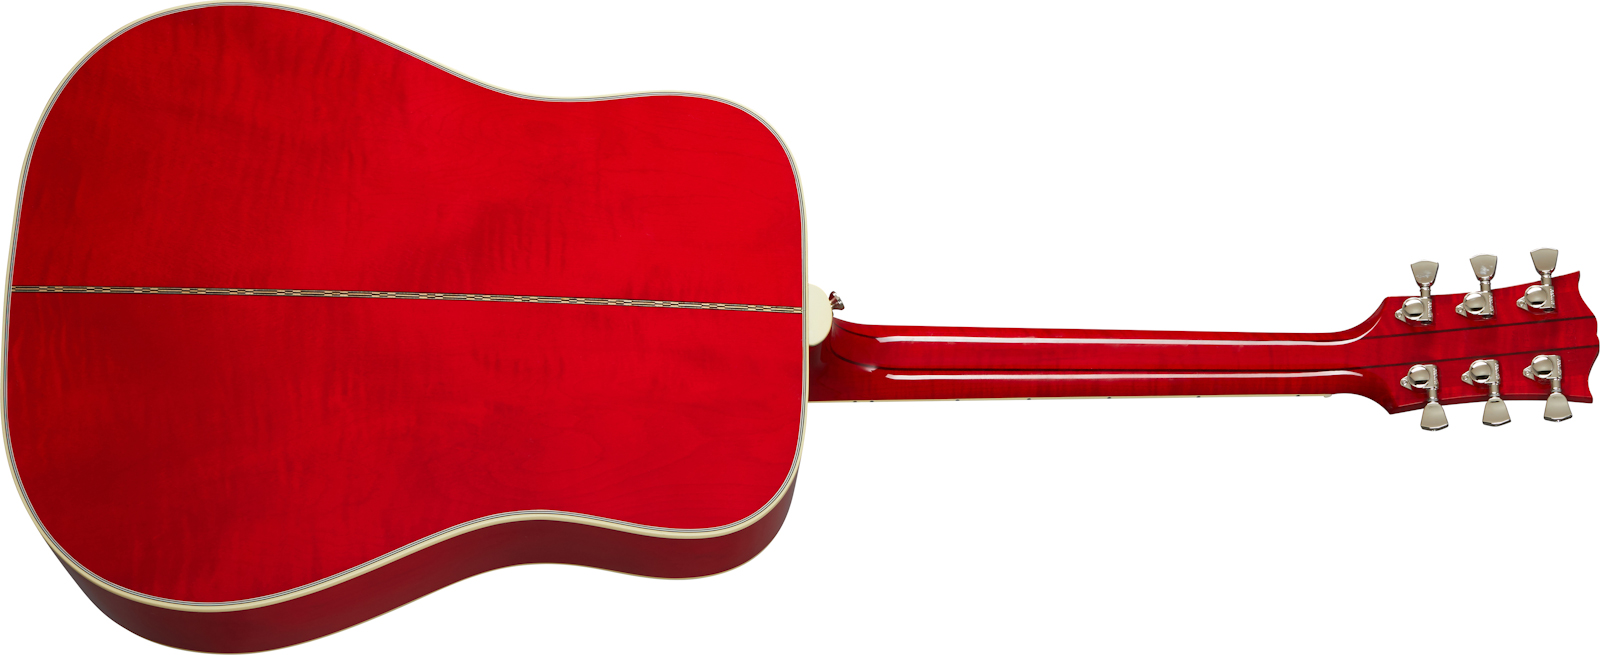 Gibson Dove Original 2020 Dreadnought Epicea Erable Rw - Vintage Cherry Sunburst - Guitare Electro Acoustique - Variation 1